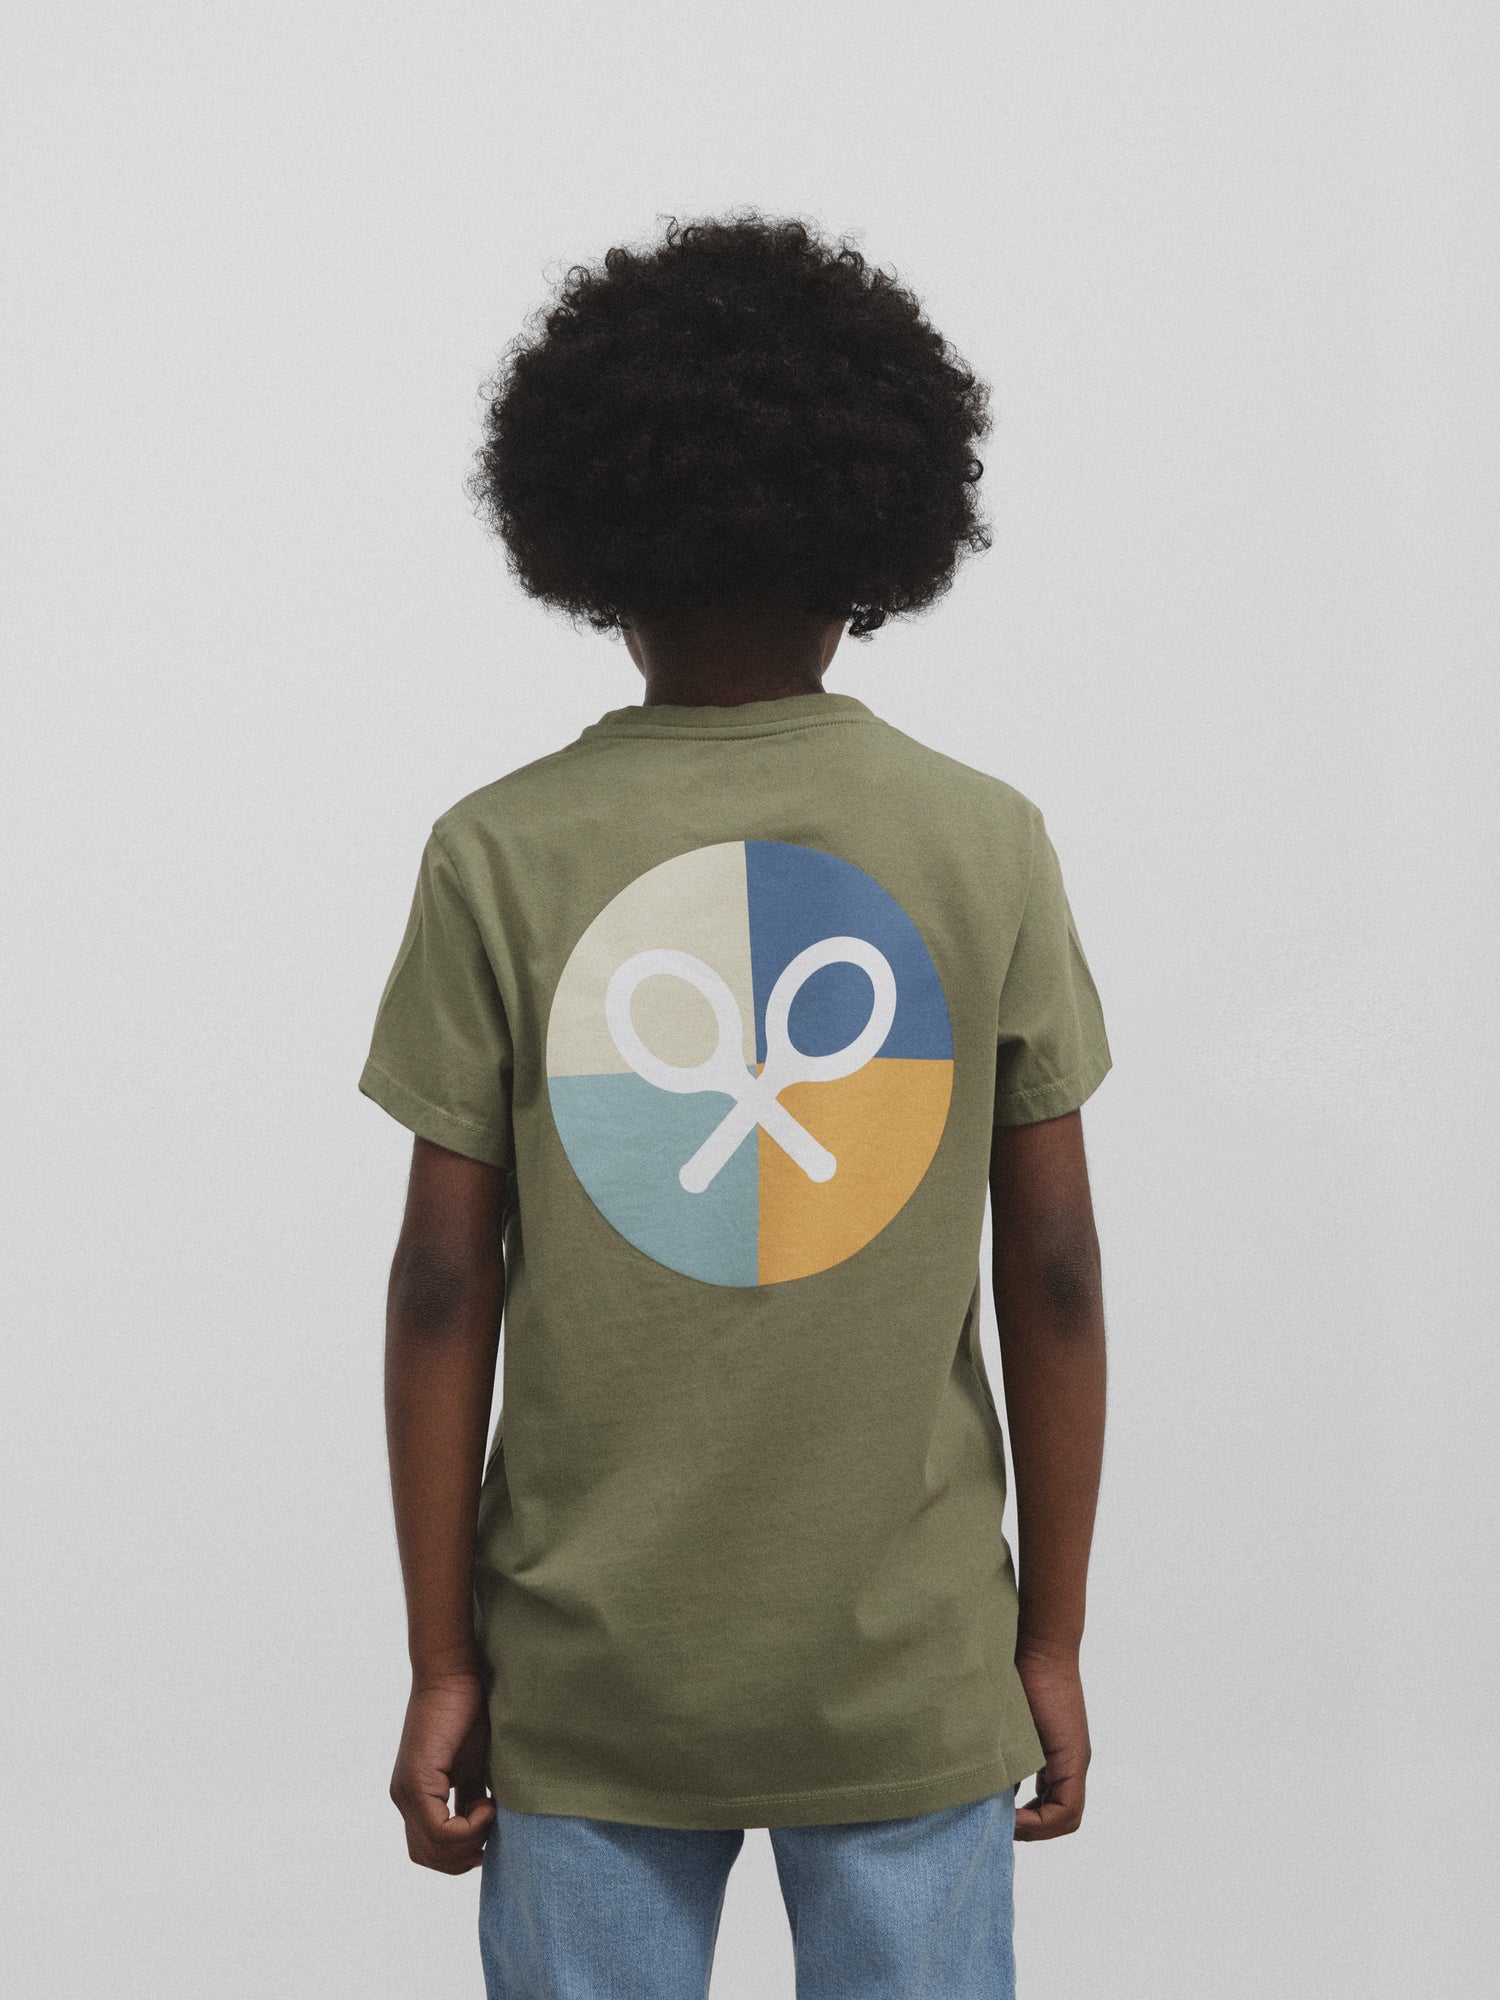 Camiseta kids logo esfera multicolor khaki